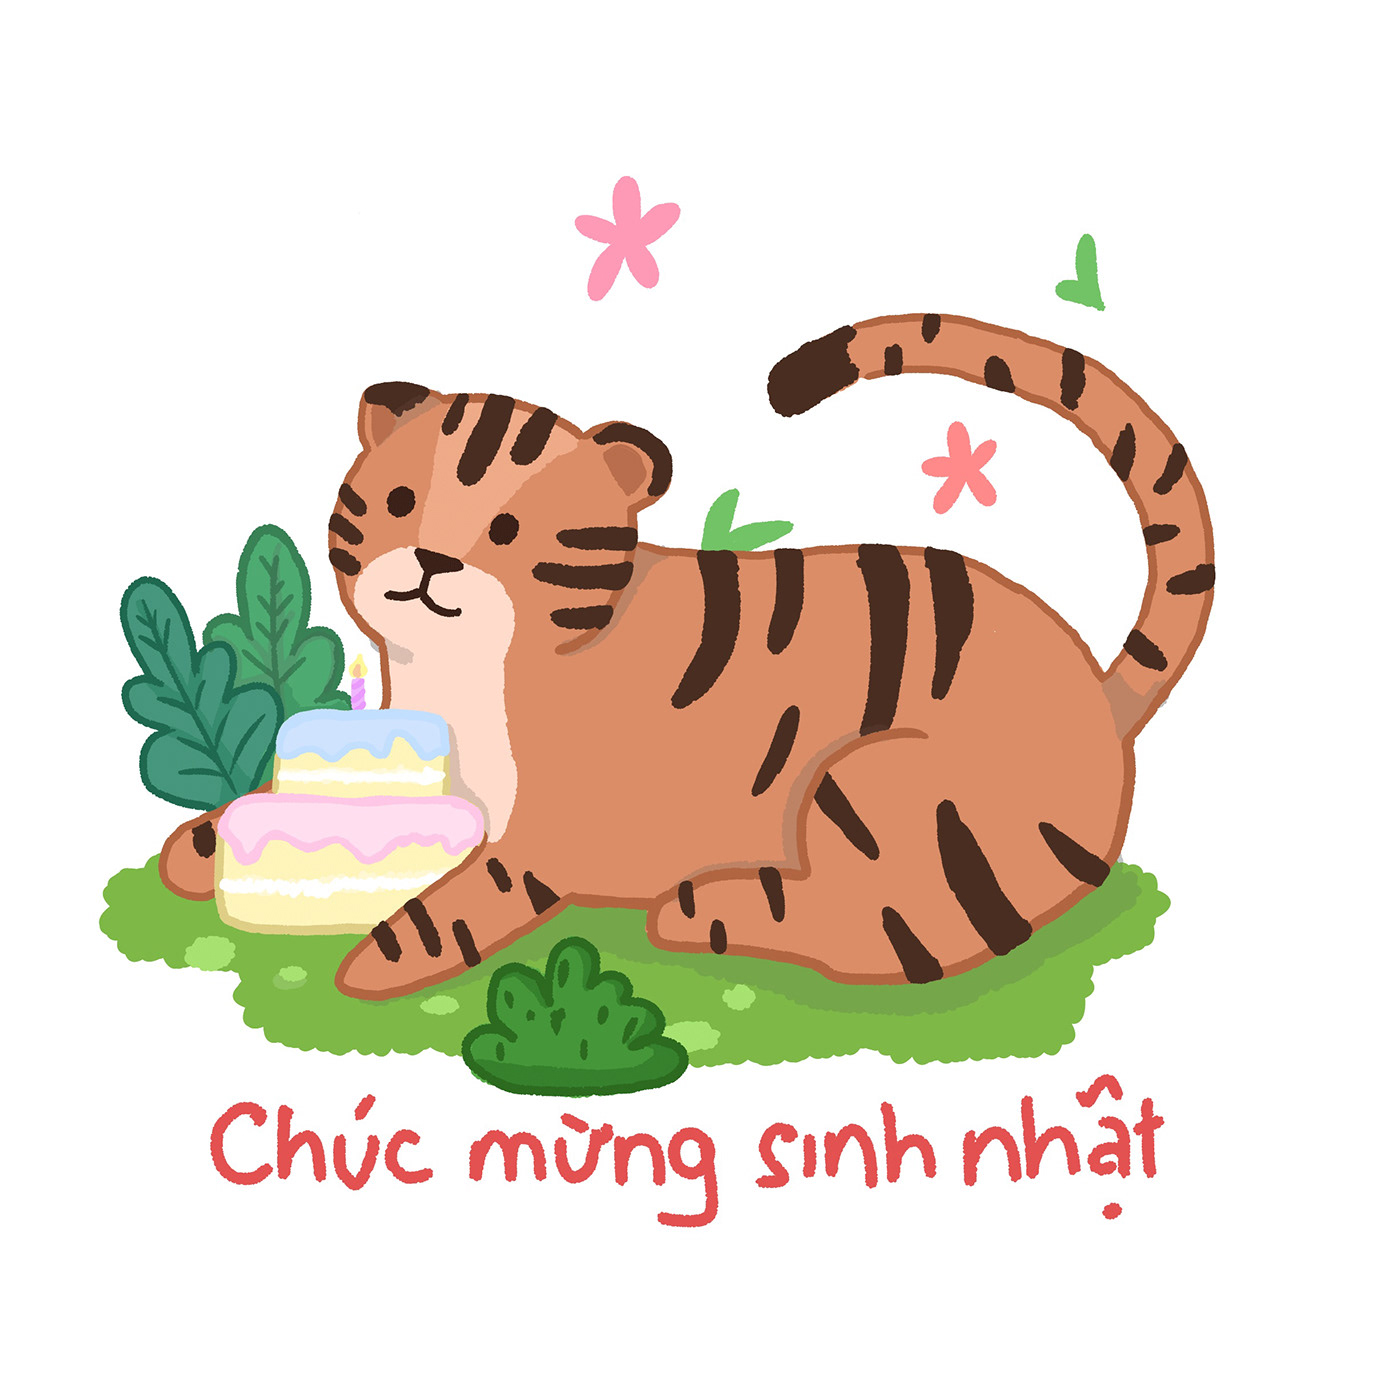 ILLUSTRATION  Digital Art  sticker drawing sticker Drawing  Seren cute animal animal illustration Illustrator